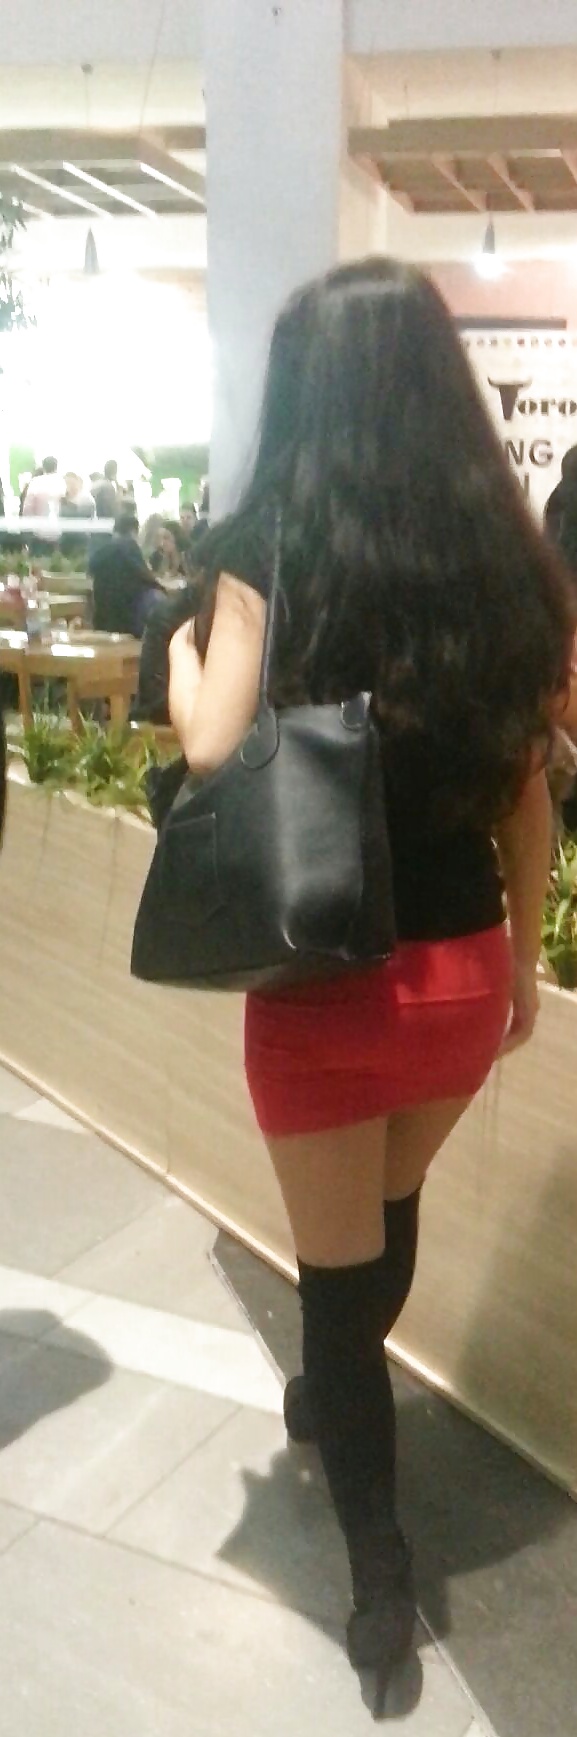 Spy mini skirt sexy teens in mall romanian #39540202